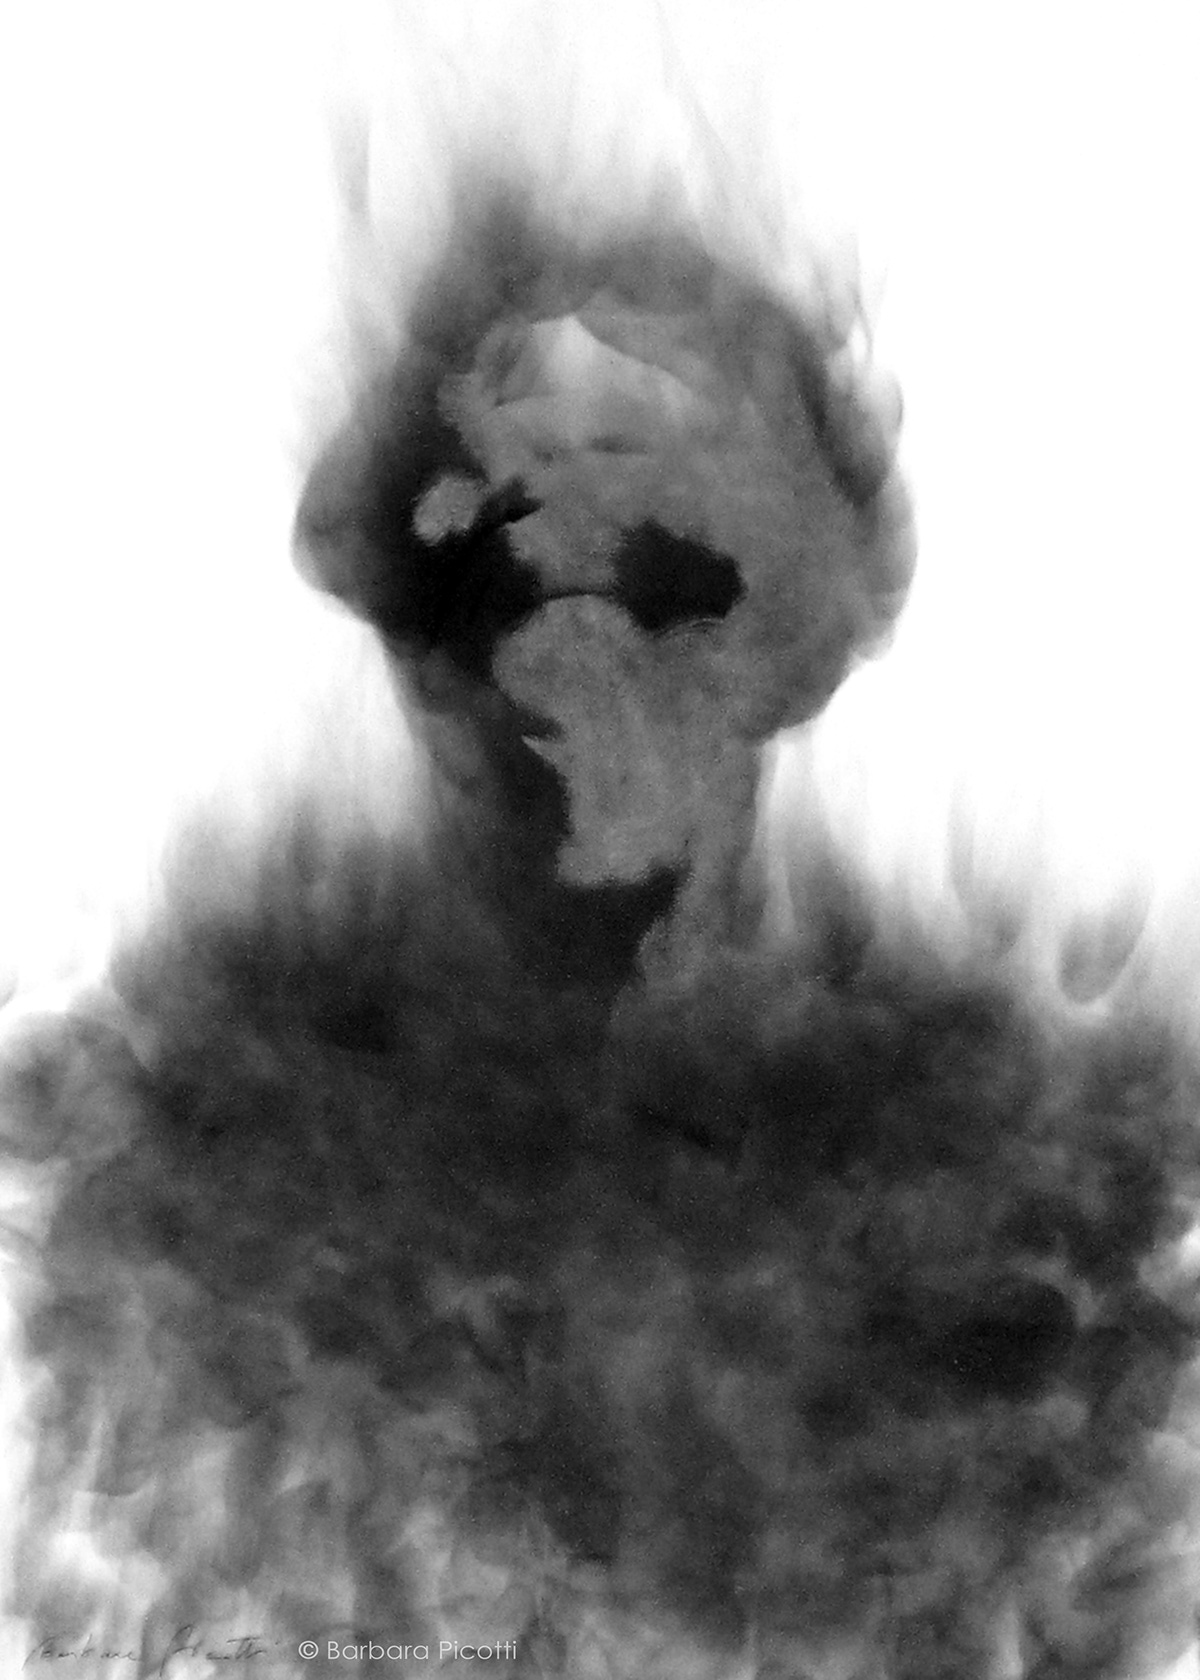 Smoke drawing disegno col fumo disegno monocromo black and white bianco e nero disegno di figura Figure Drawing smoke monochrome Monochrome drawing